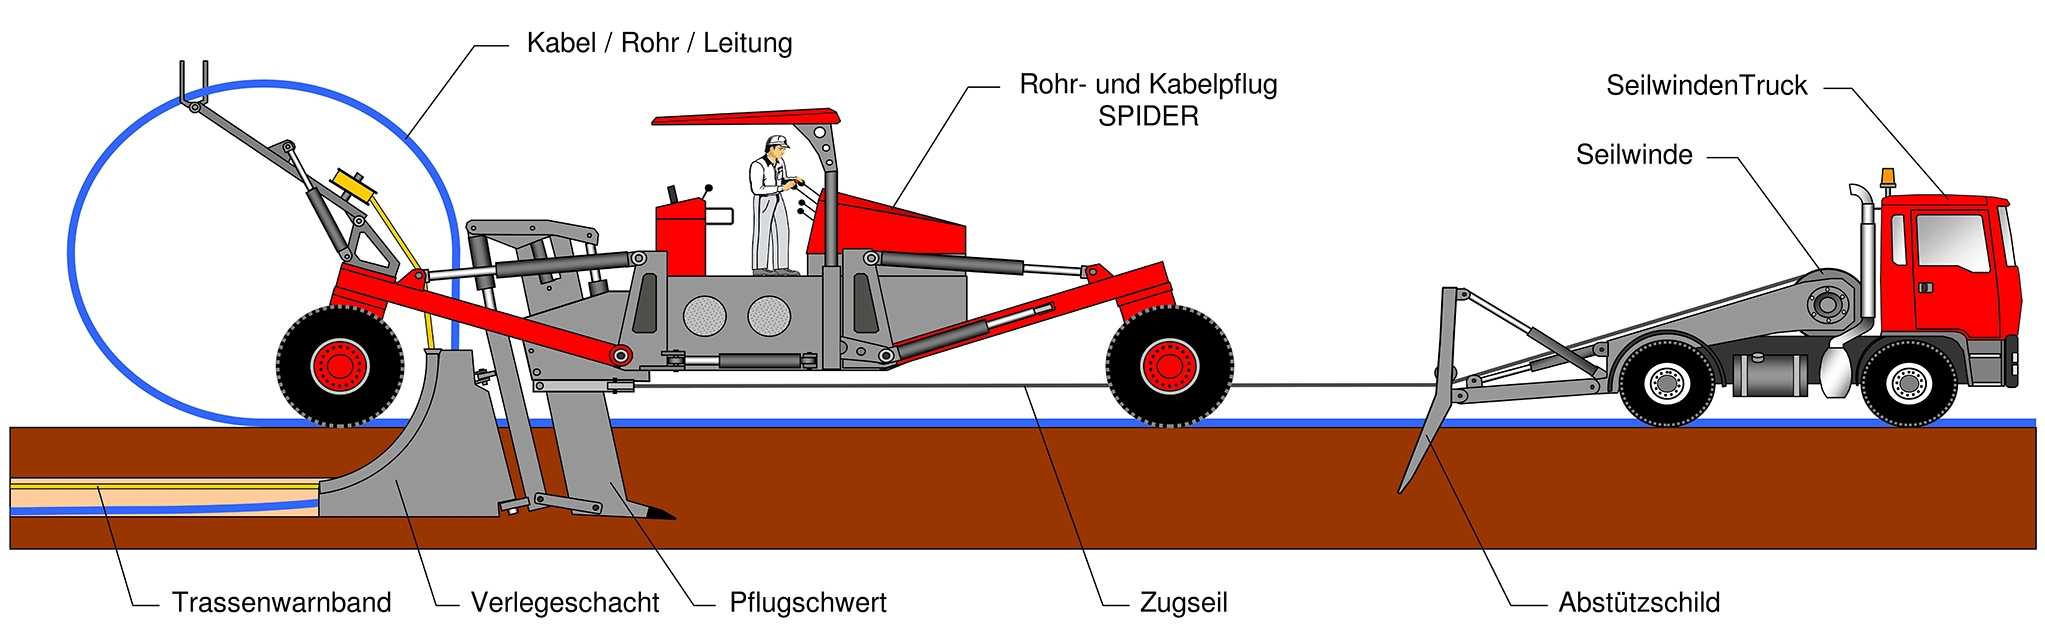 Systemskizze des Rohr- und Kabelpfluges. Bild: Föckersperger